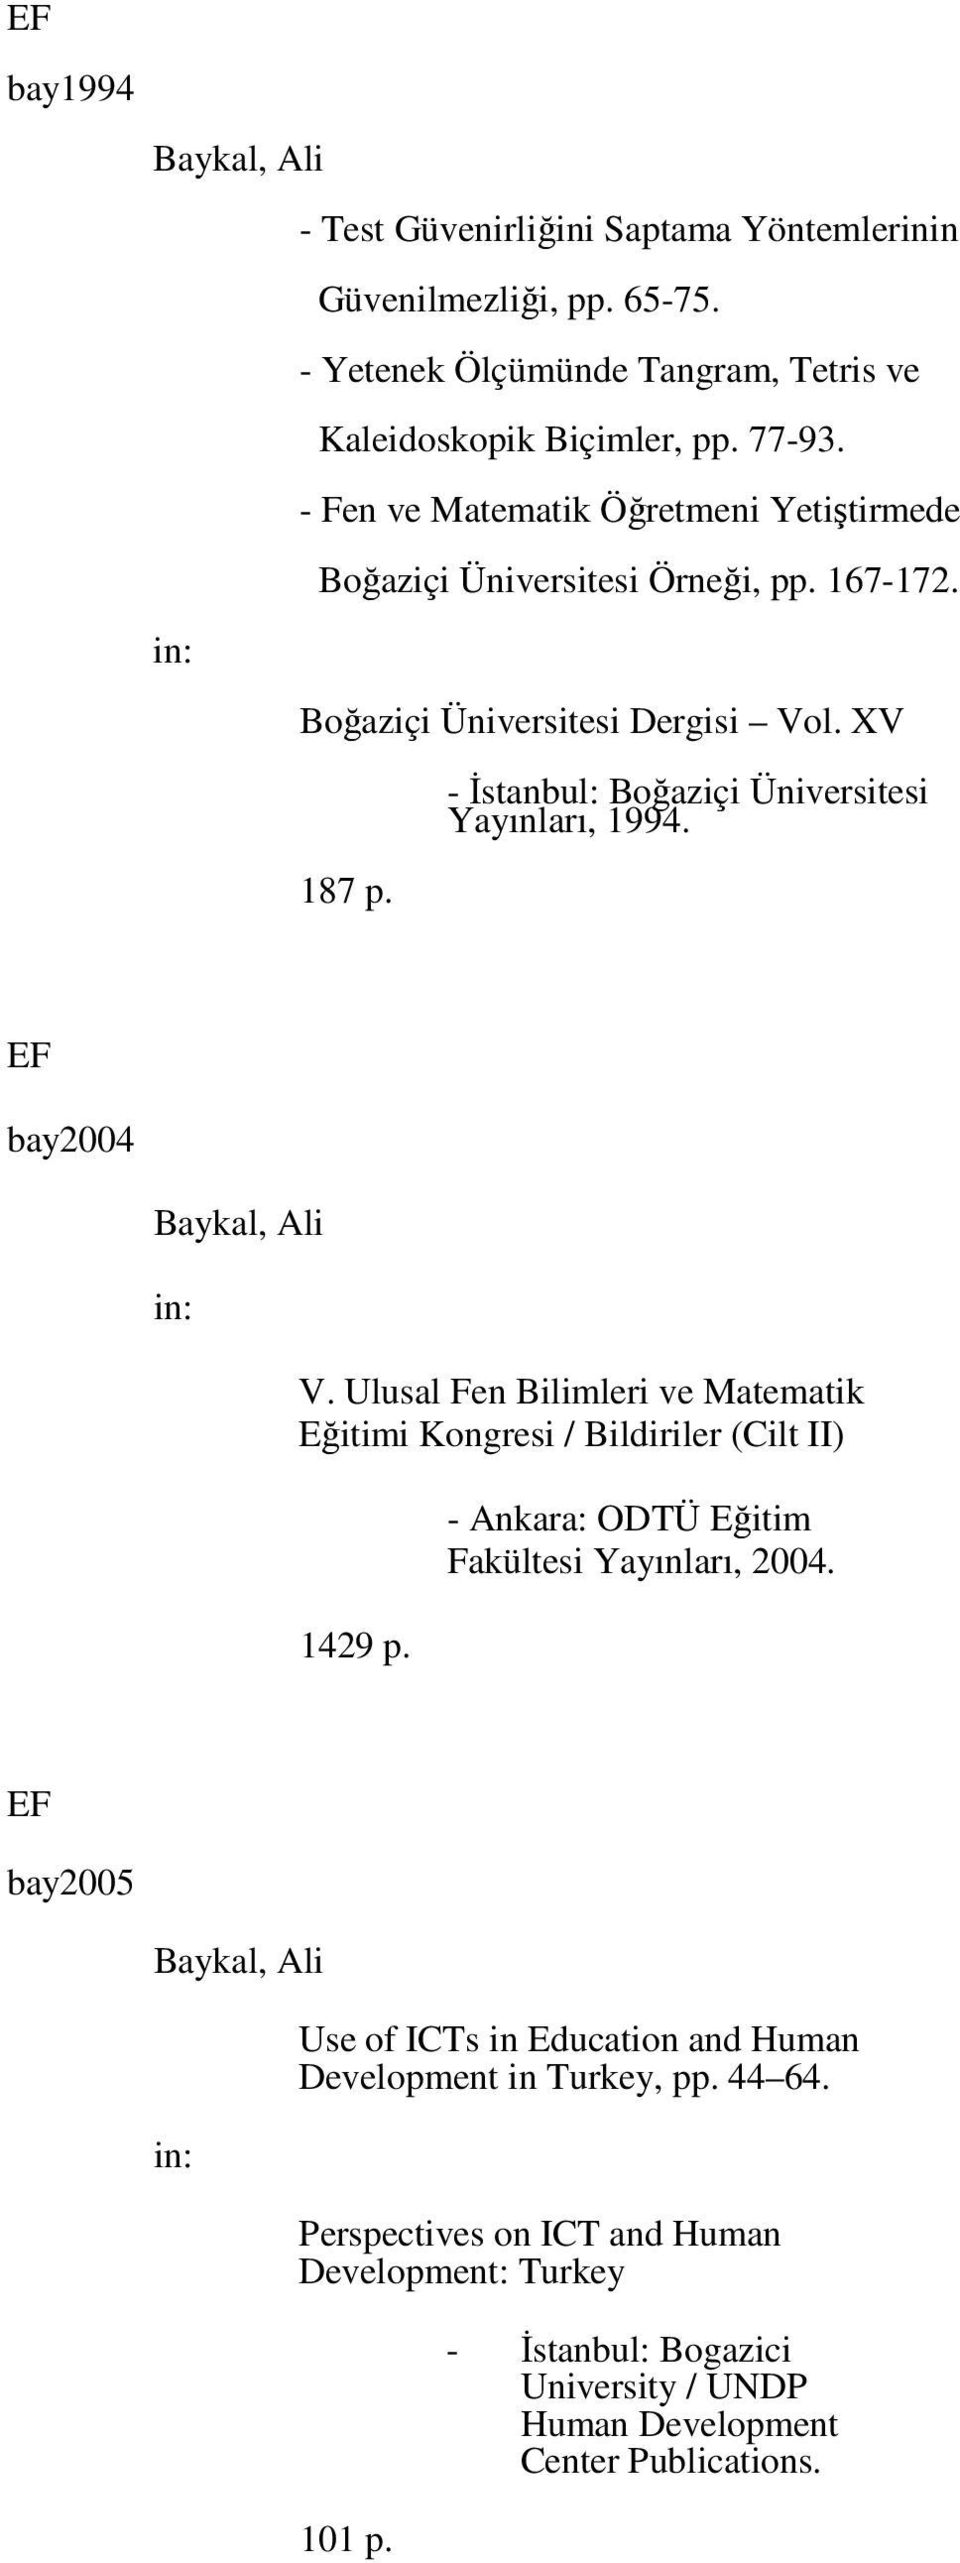 Ulusal Fen Bilimleri ve Matematik Eğitimi Kongresi / Bildiriler (Cilt II) 1429 p. - Ankara: ODTÜ Eğitim Fakültesi Yayınları, 2004.